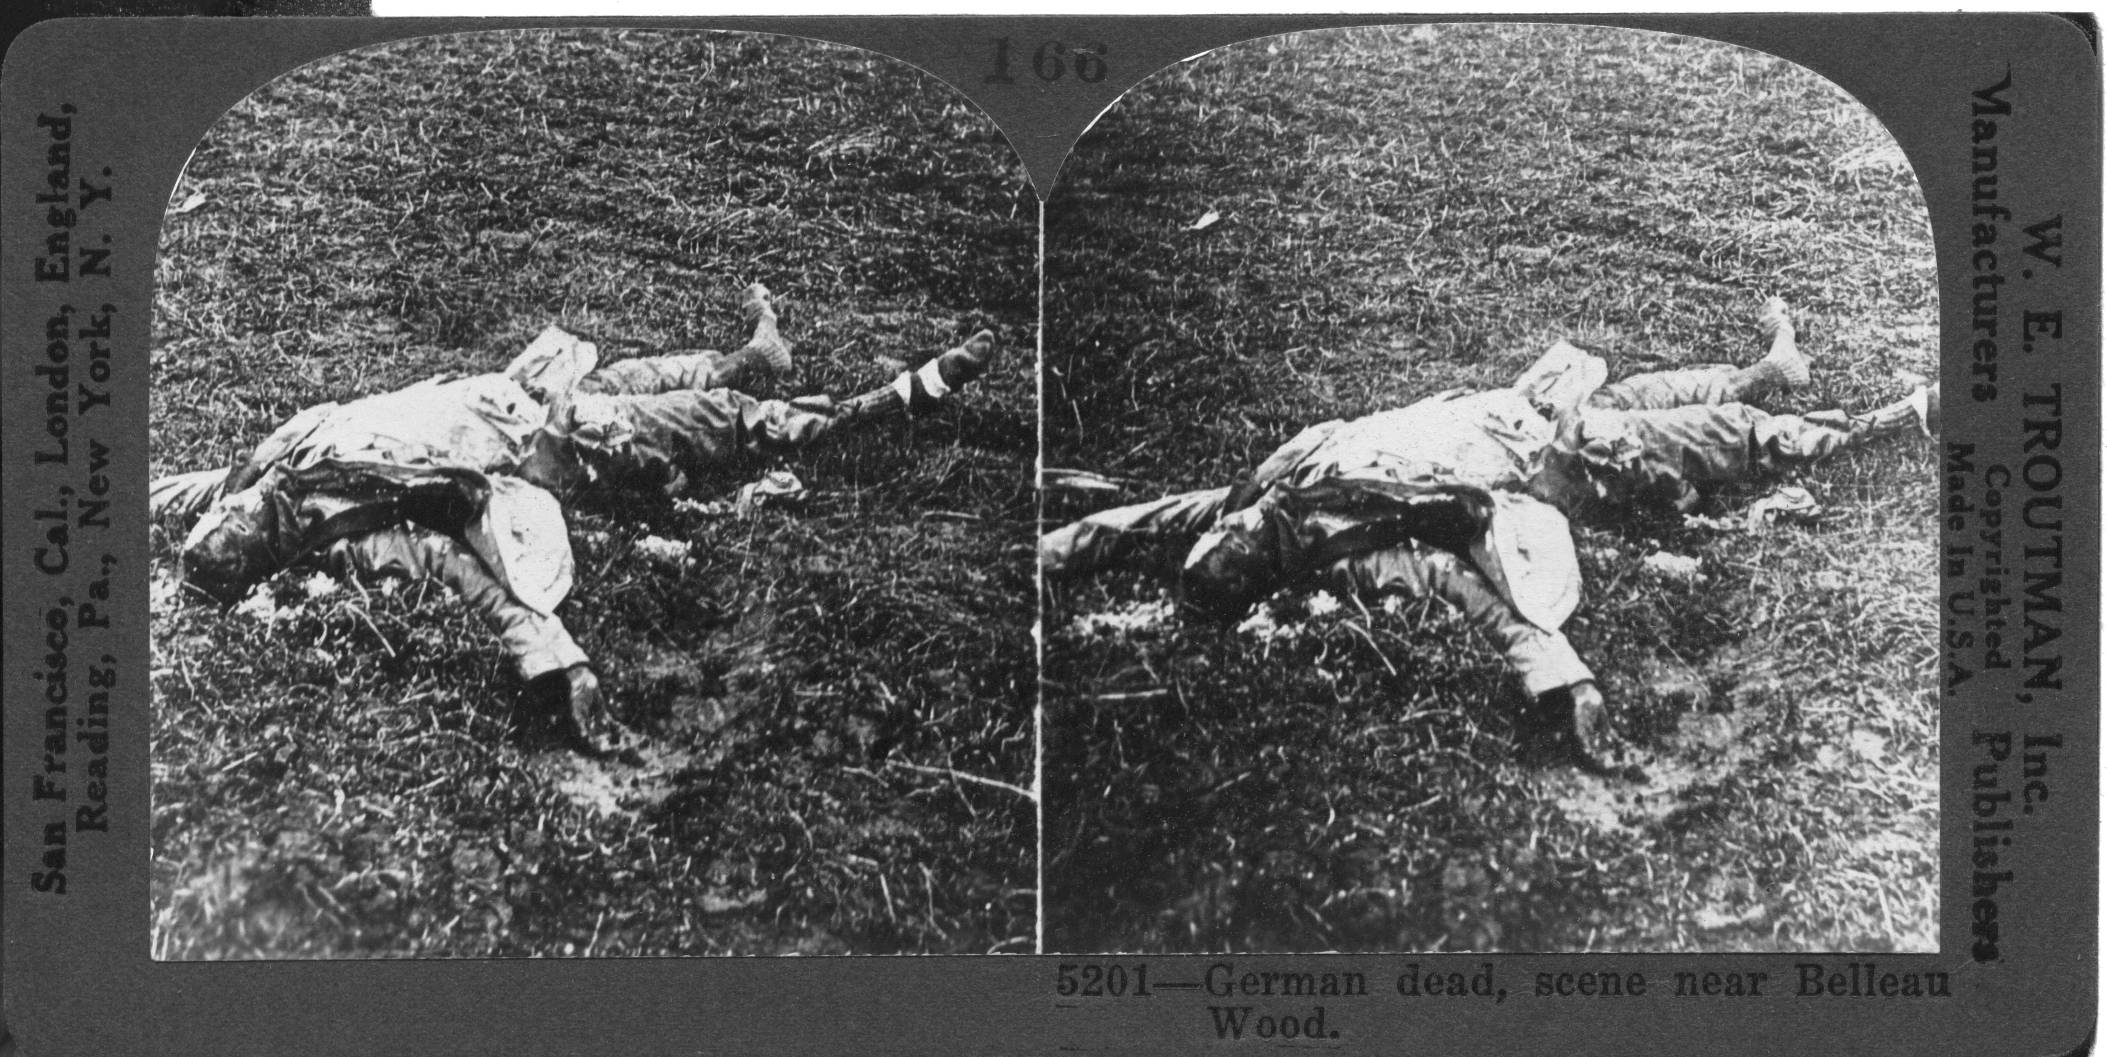 German dead, scene near Belleau Wood